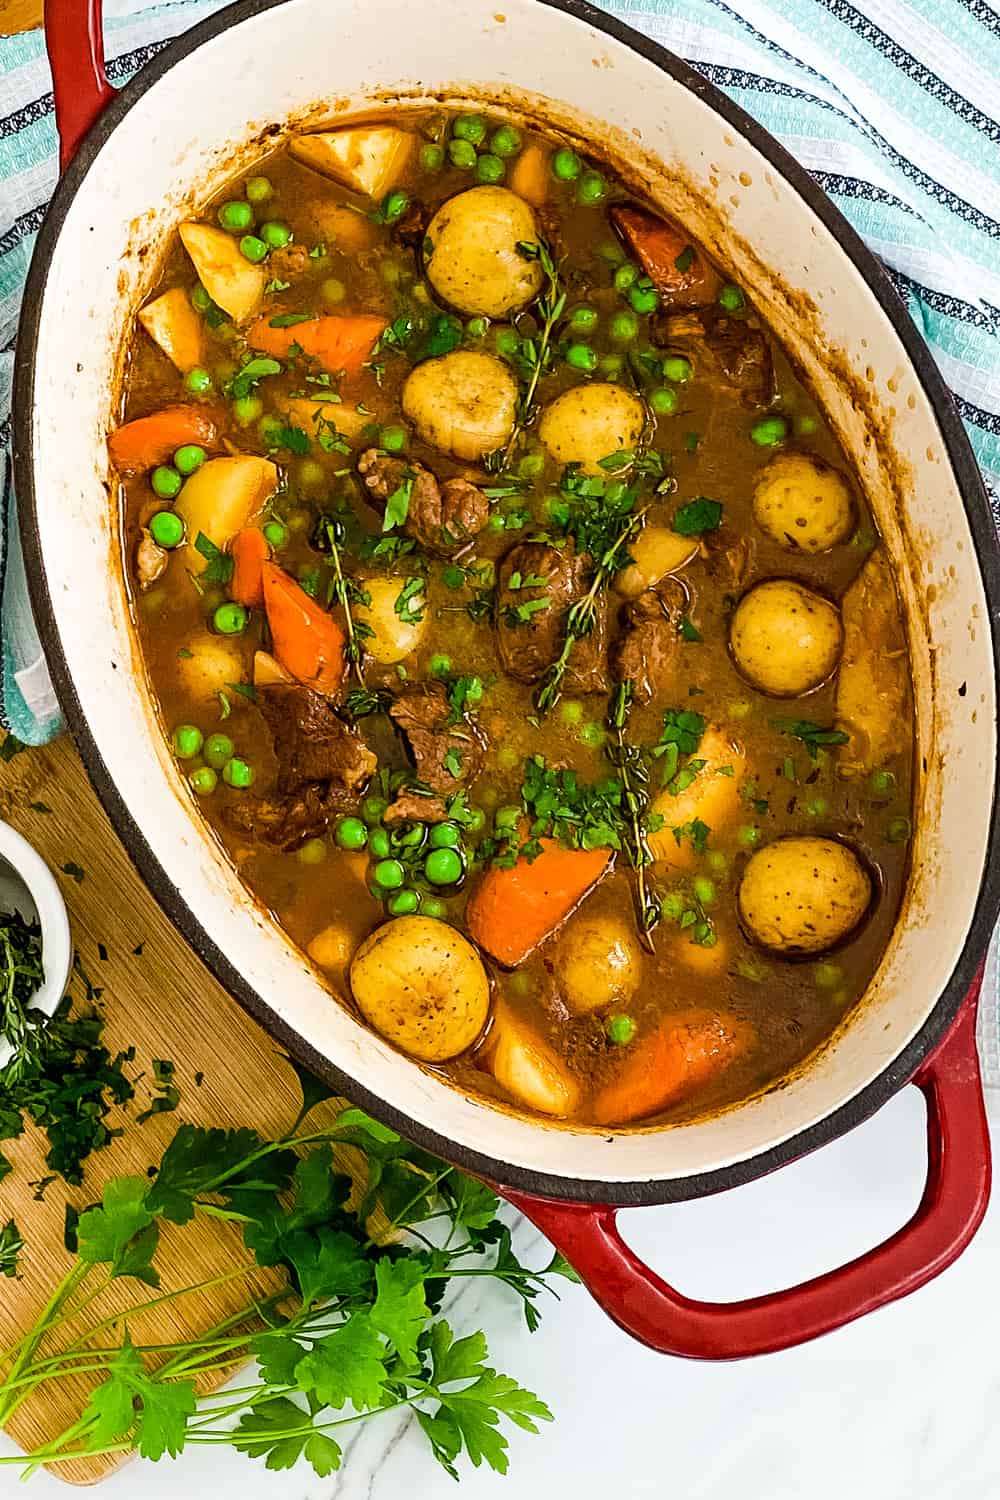 Irish lamb stew with fresh thyme